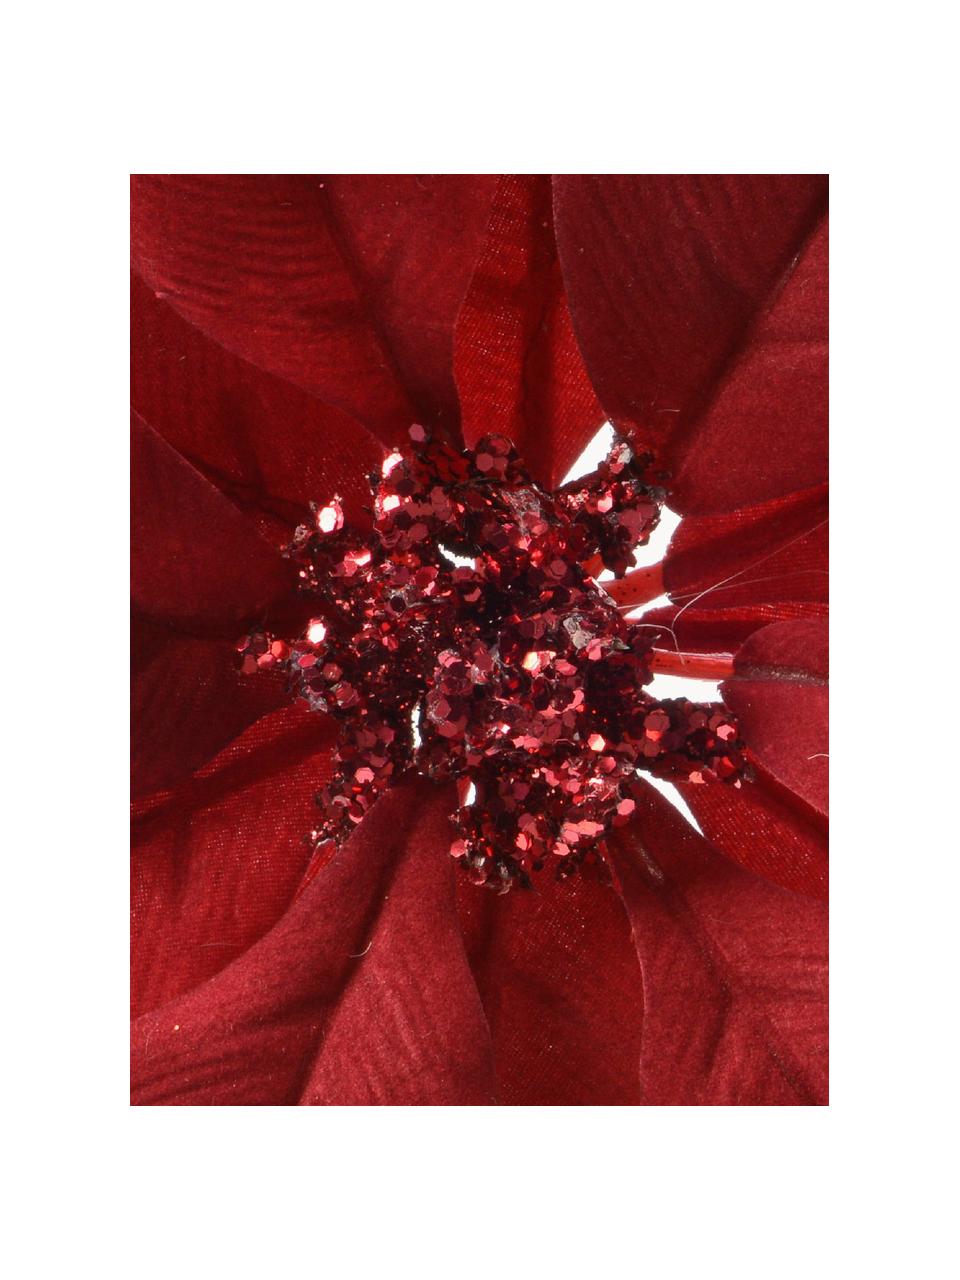 Baumanhänger Poinsettia, 2 Stück, Polyester, rot, Ø 24 x H 7 cm